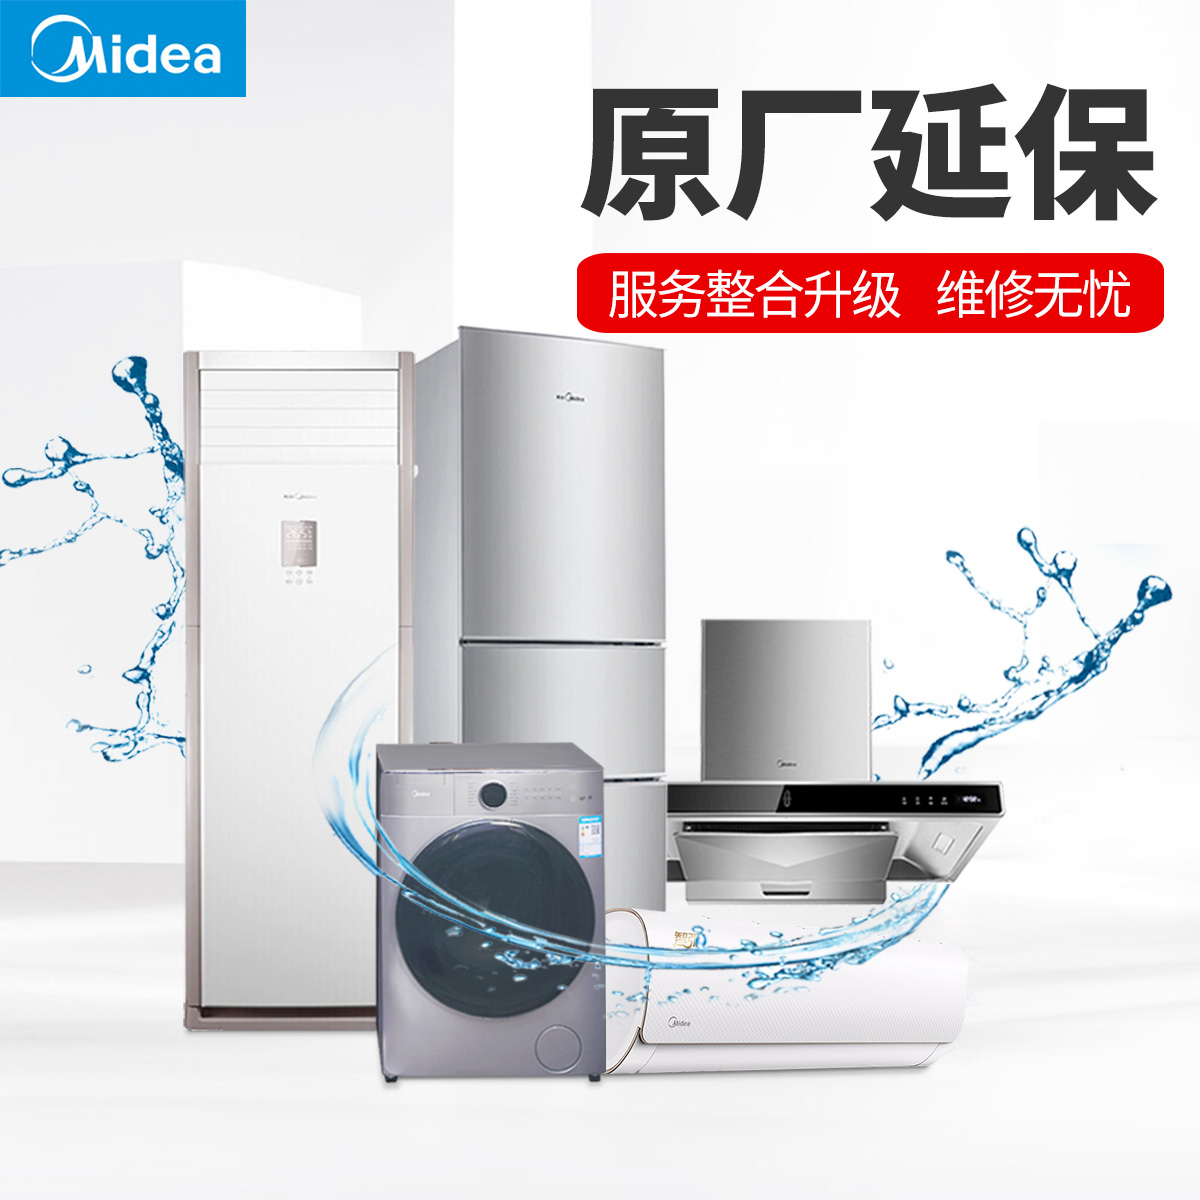 Midea/美的 洗衣机滚筒延保服务 说明书.pdf